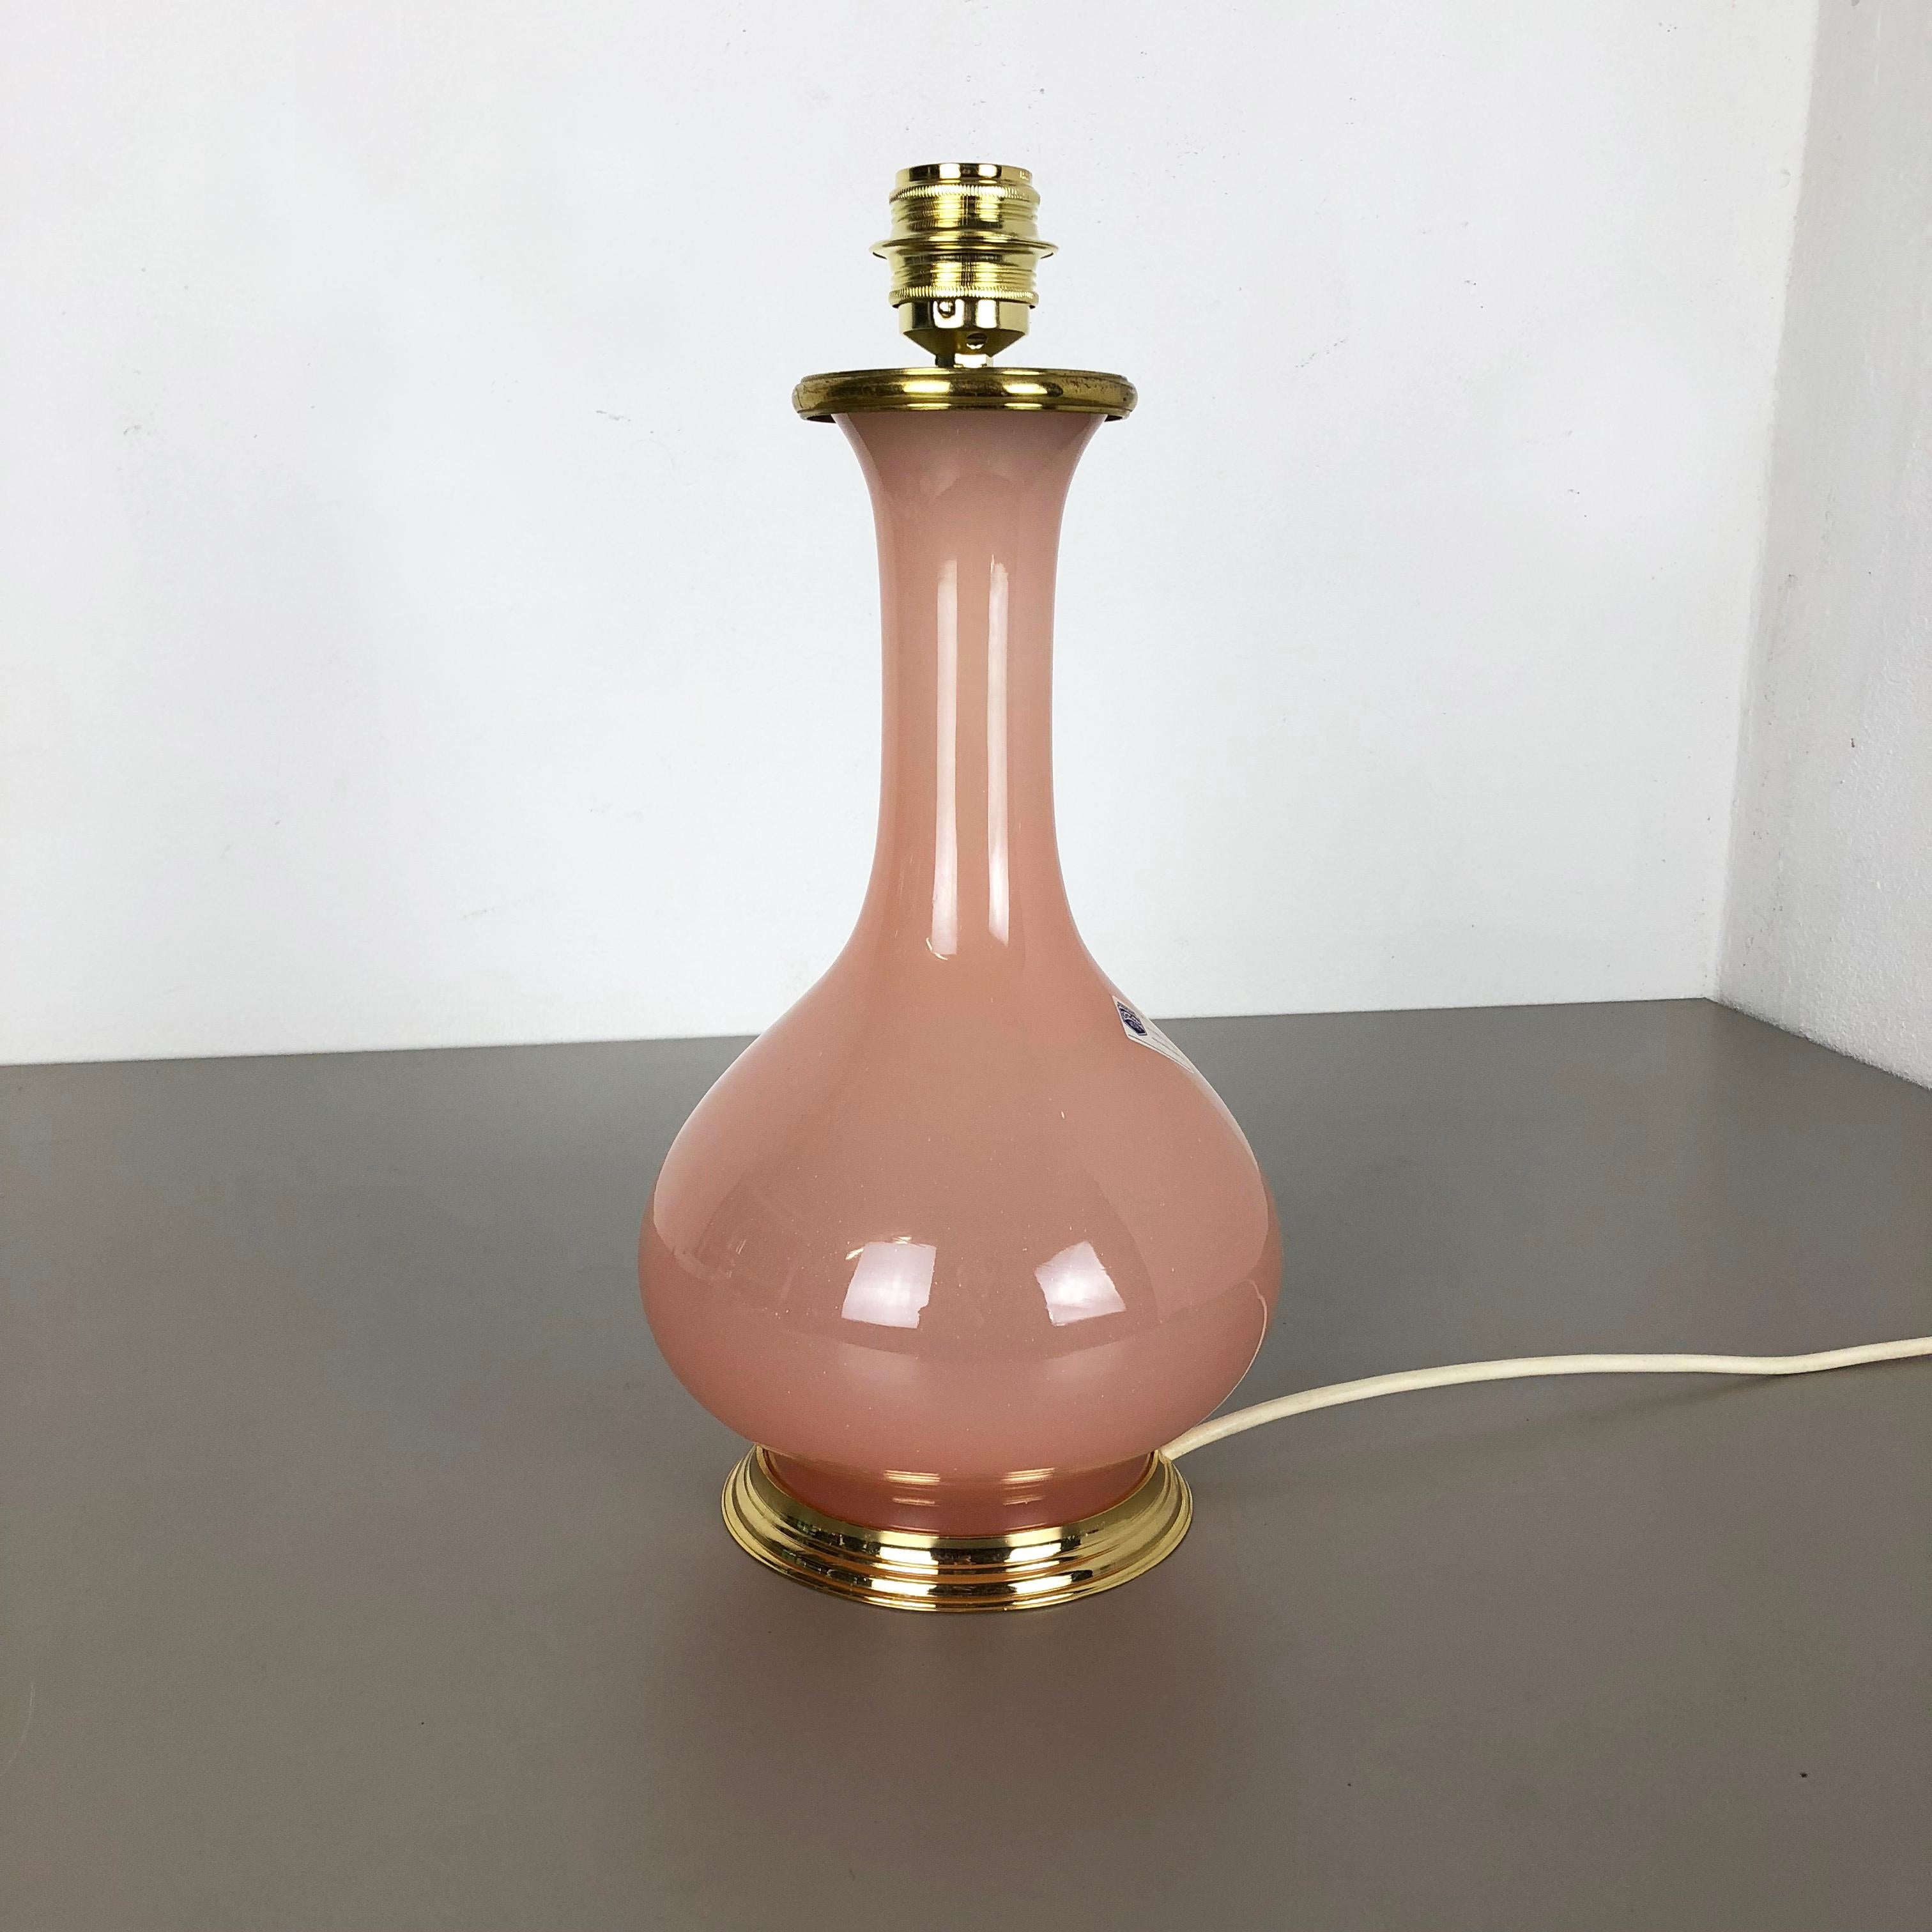 Article :

Lampe de table en verre opale de Murano



Producteur : 

Cenedese Vetri


Origine : 

Murano, Italie


Âge : 

1960s





Cette fantastique lampe de table vintage a été conçue et produite par Cenedese Vetri dans